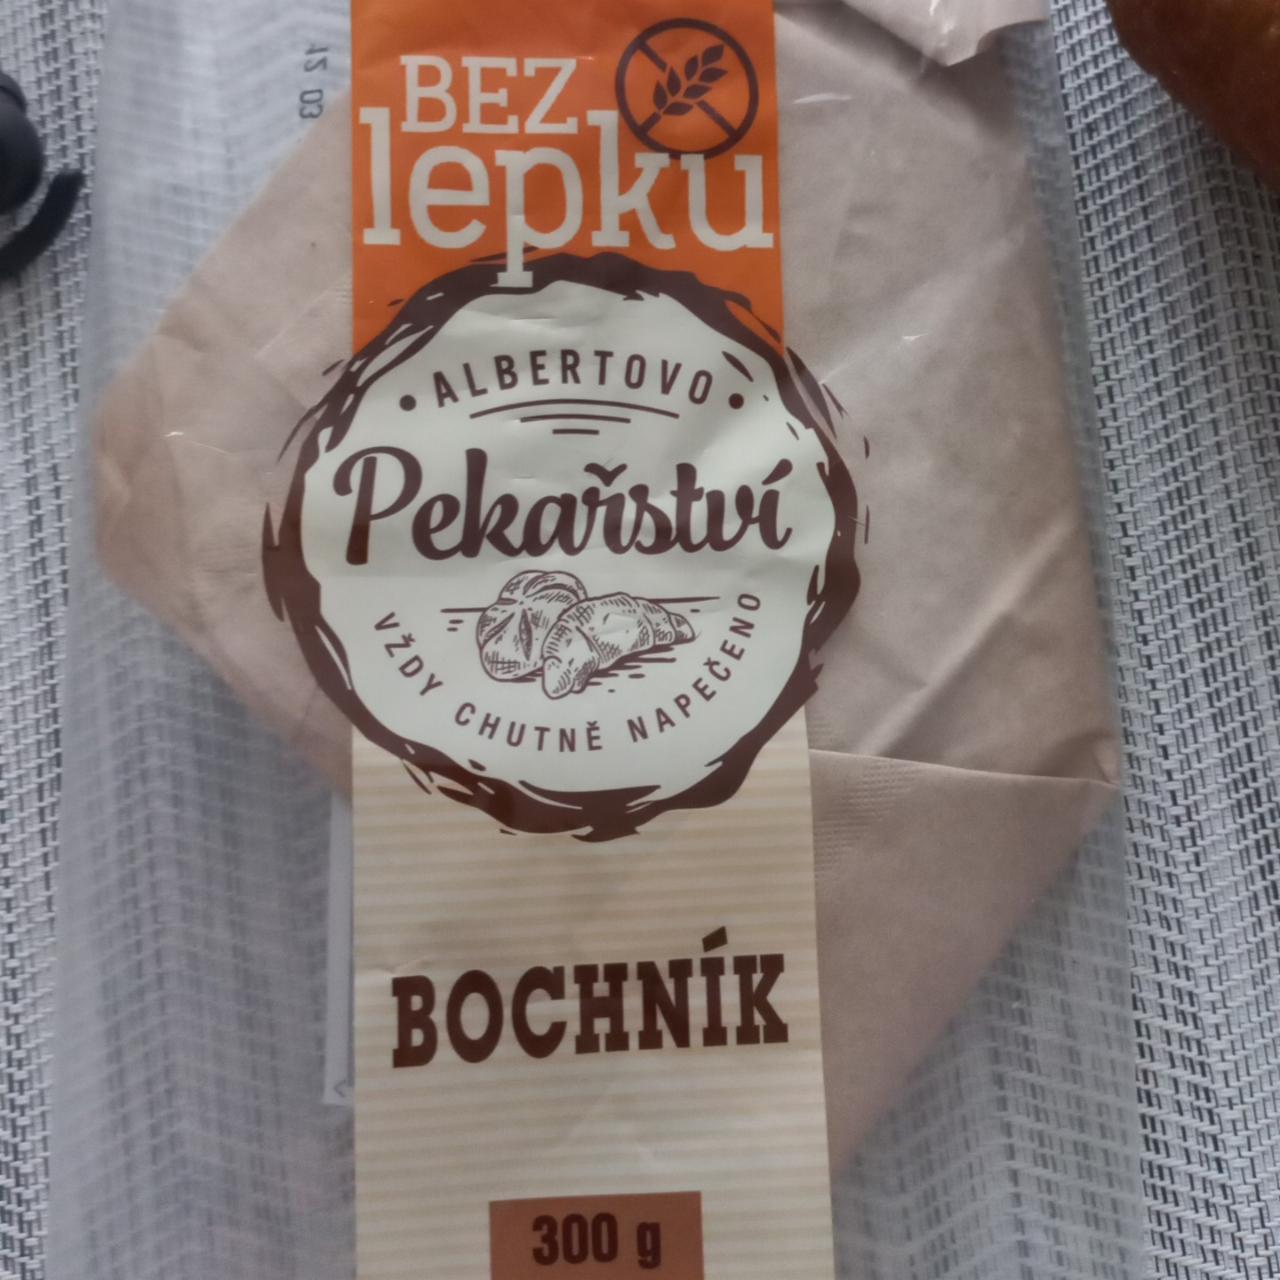 Fotografie - Bochník bez lepku Albertovo pekařství